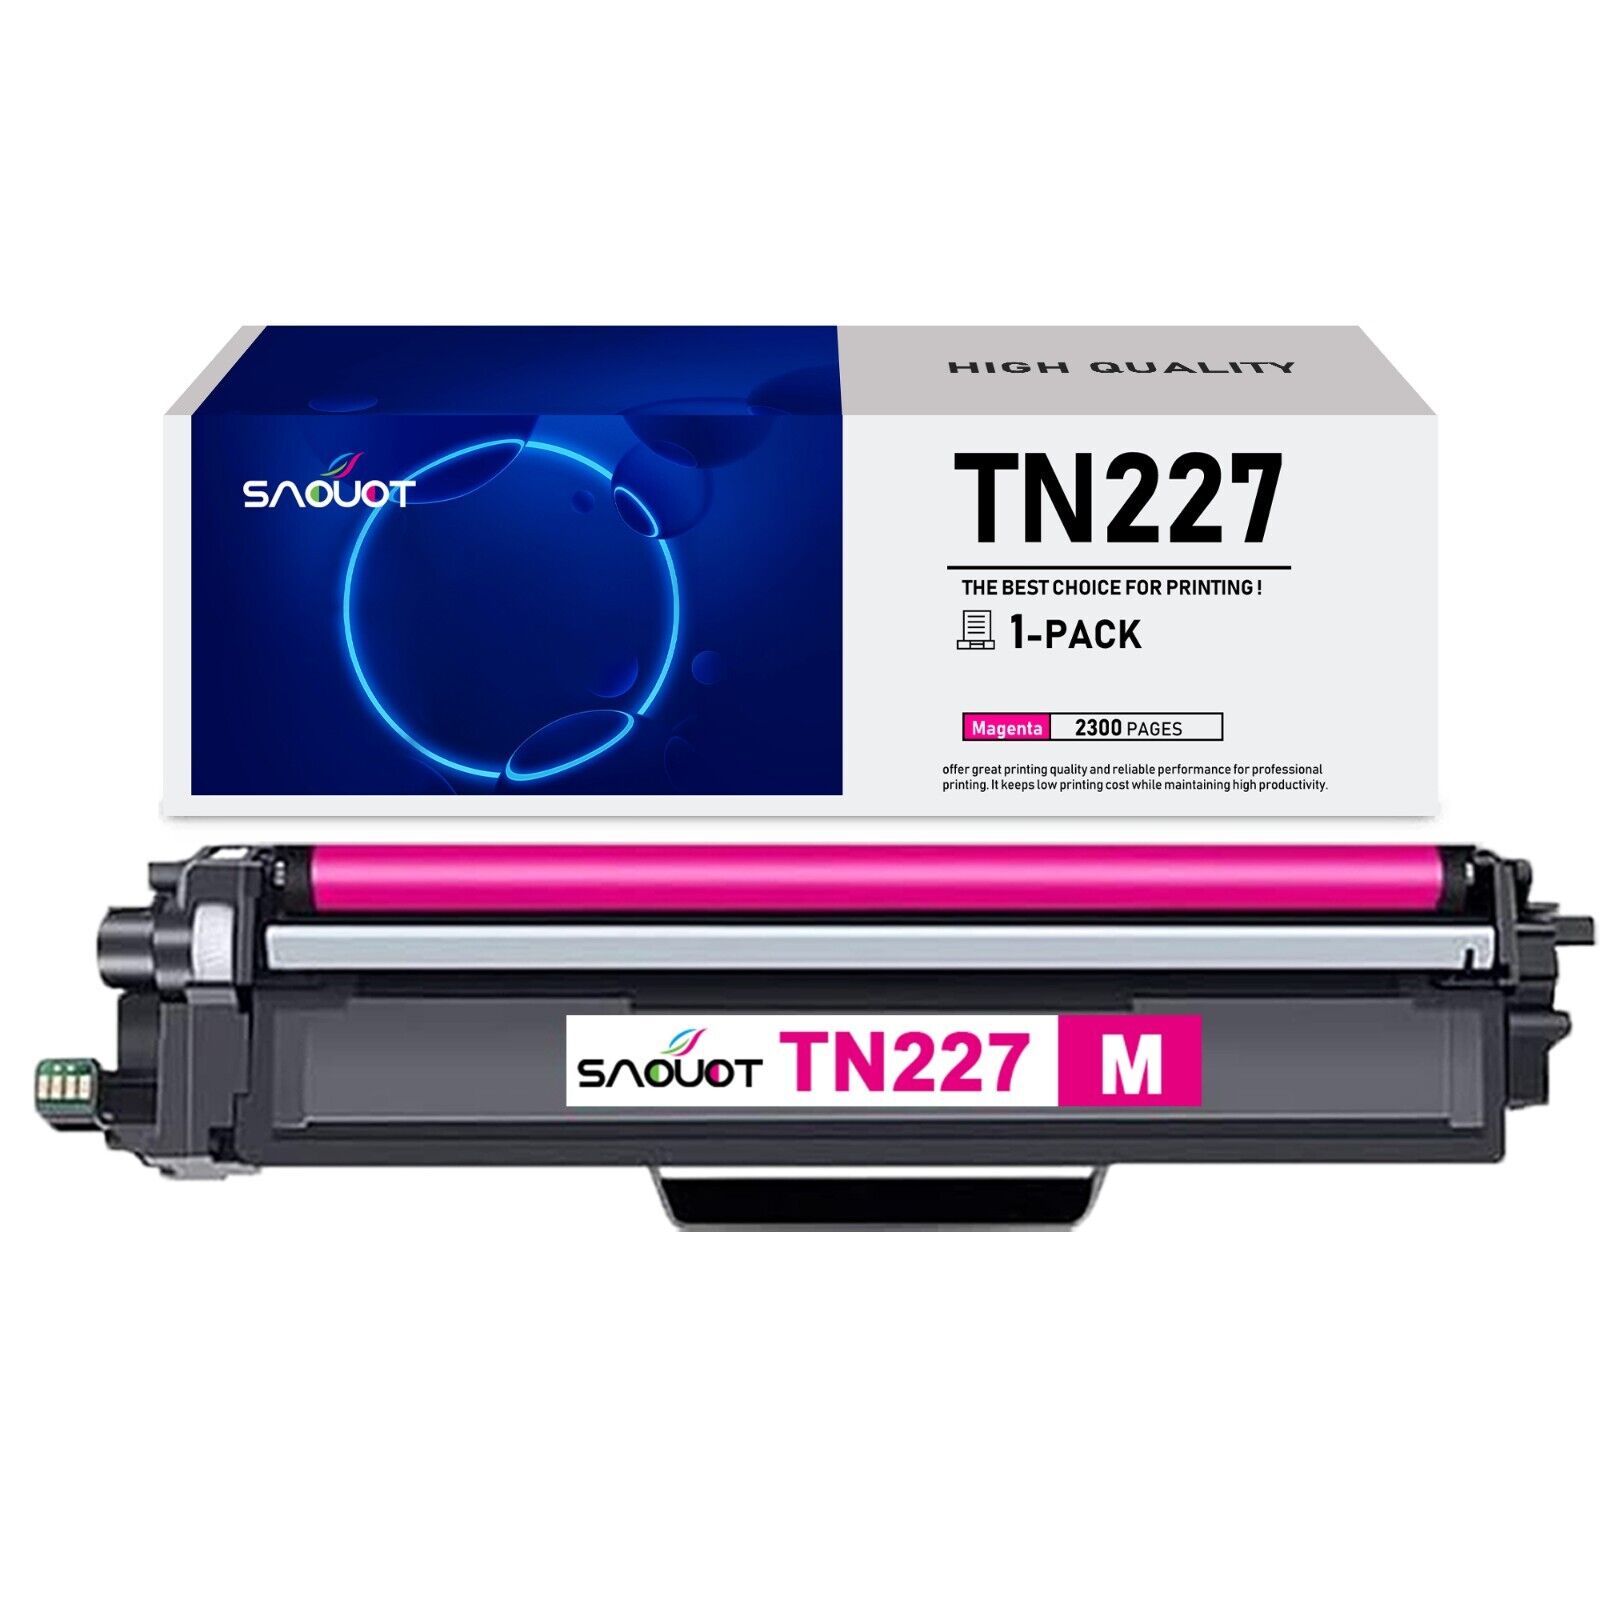 TN227 Toner Cartridge Replacement for Brother TN227 TN-227 HL-L3270CDW L3290CDW